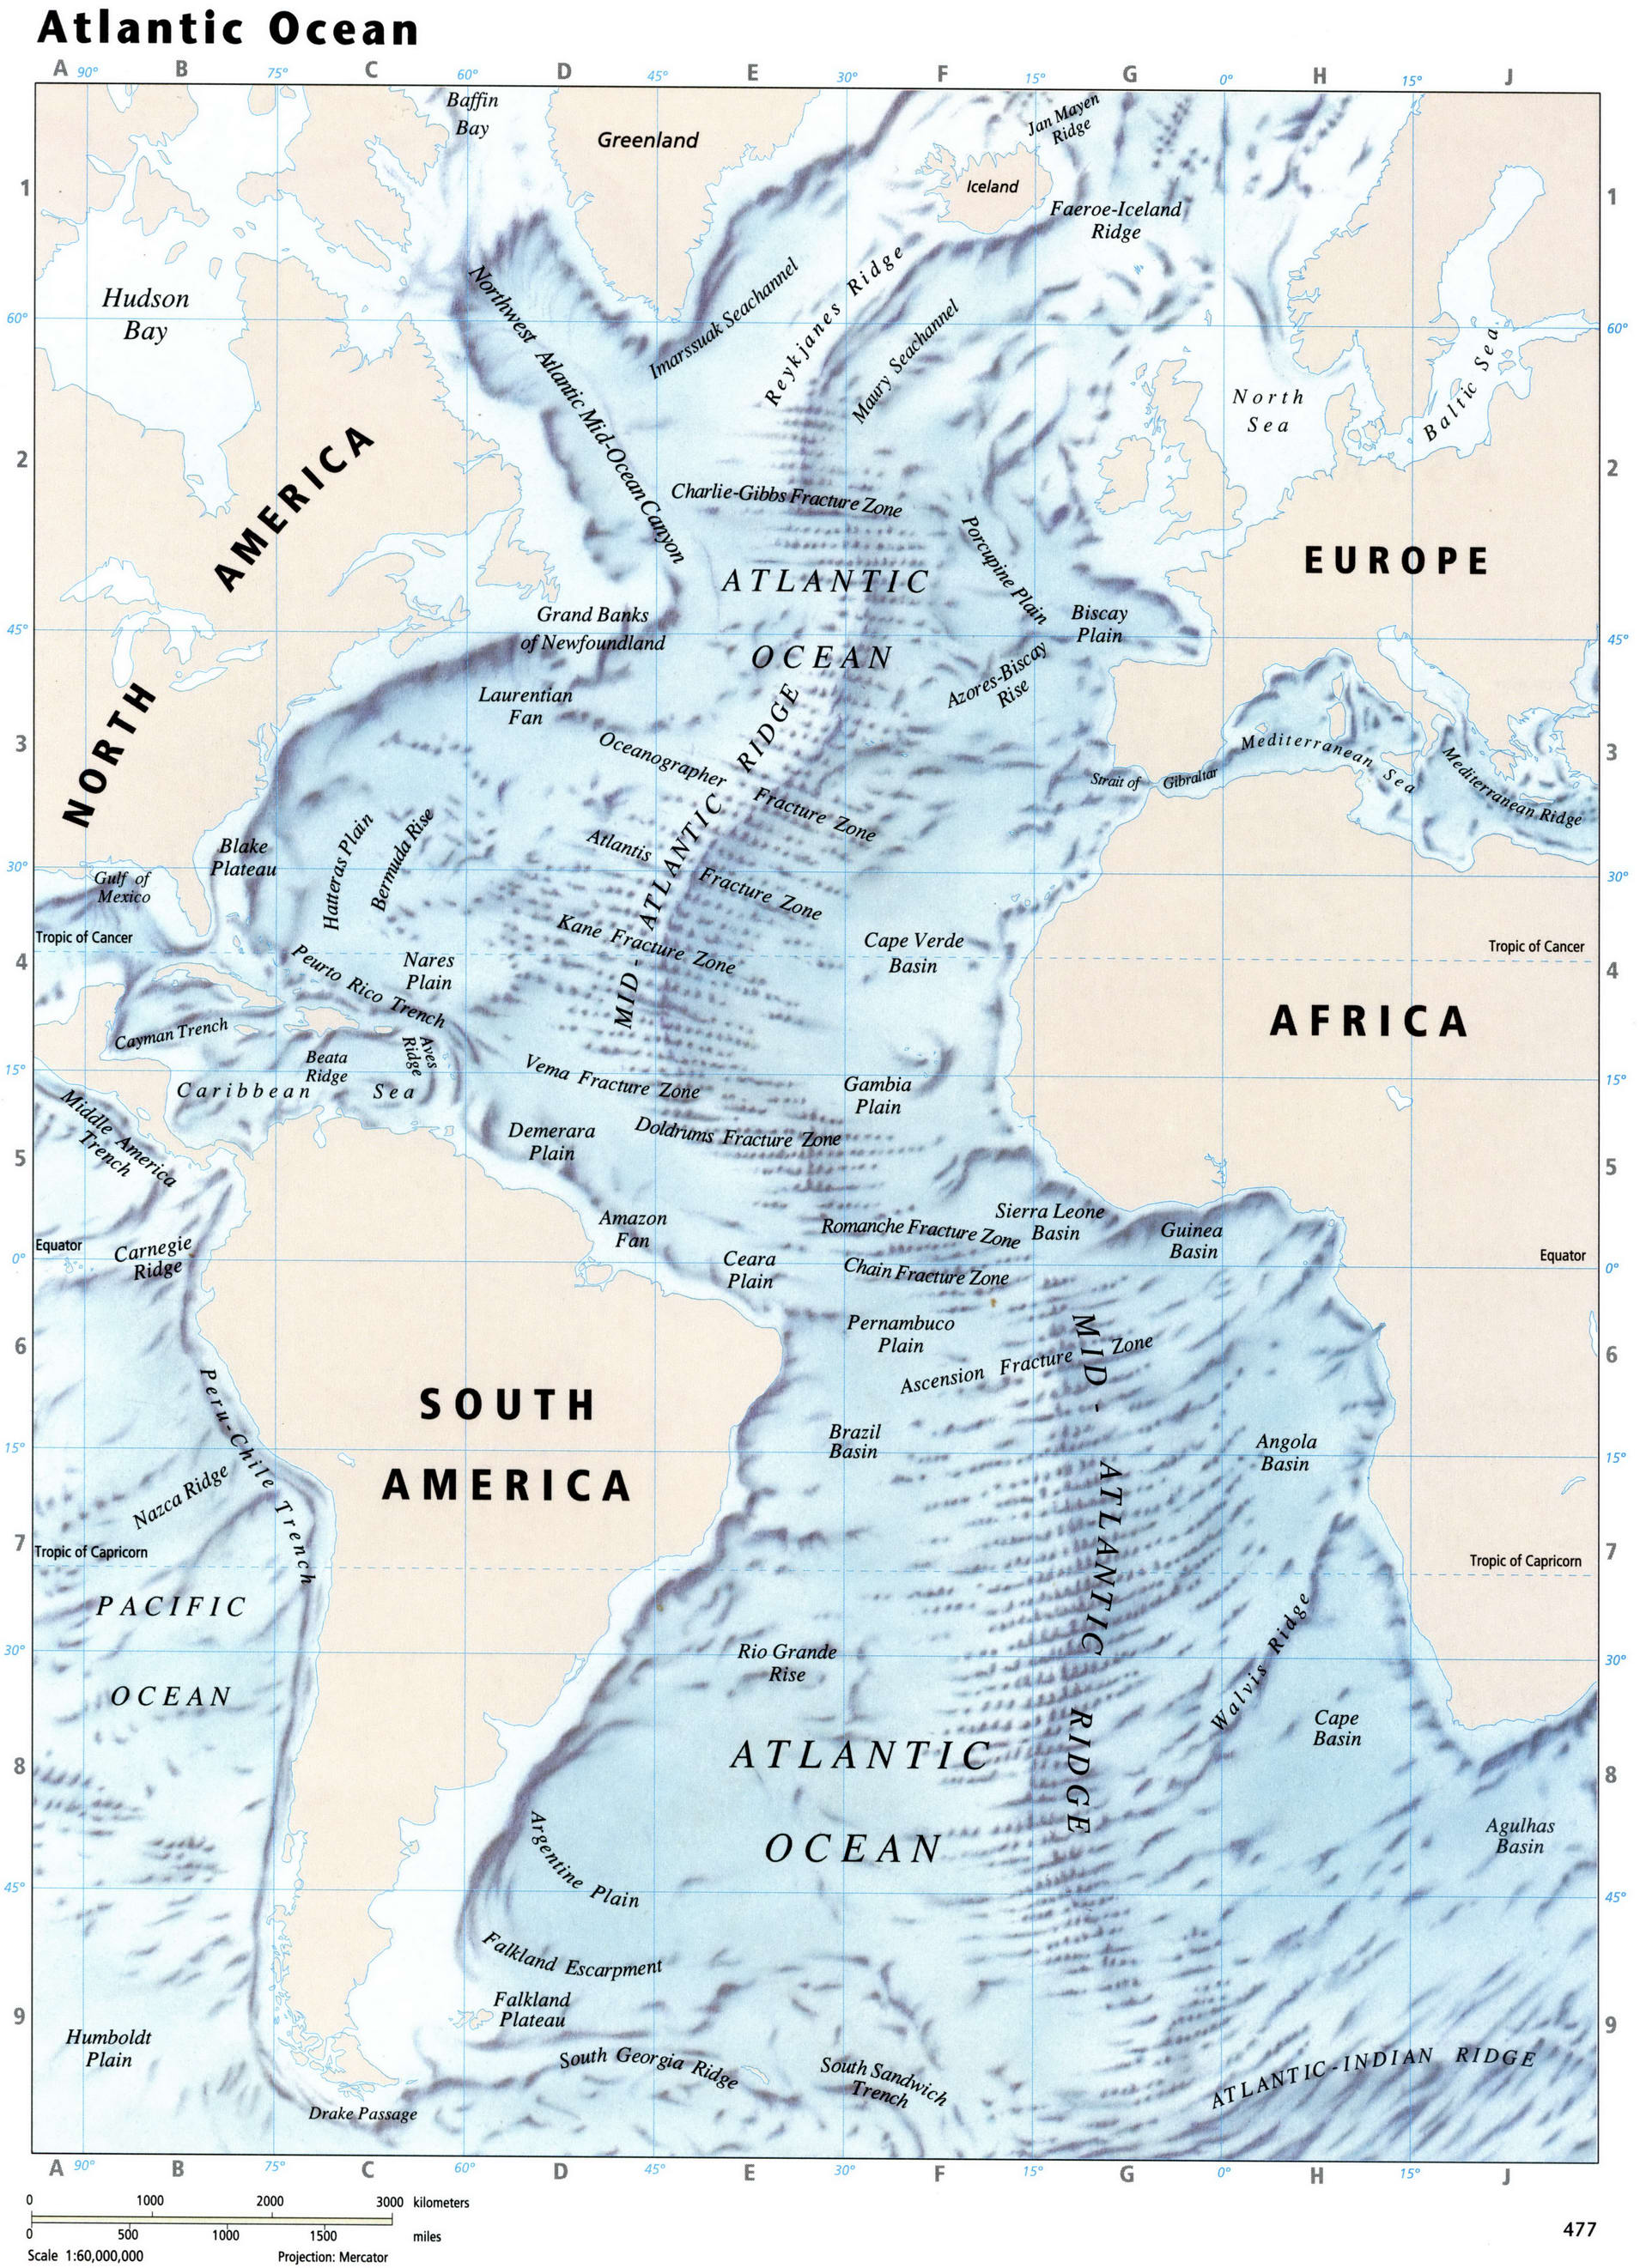 Atlantic Ocean detailed map